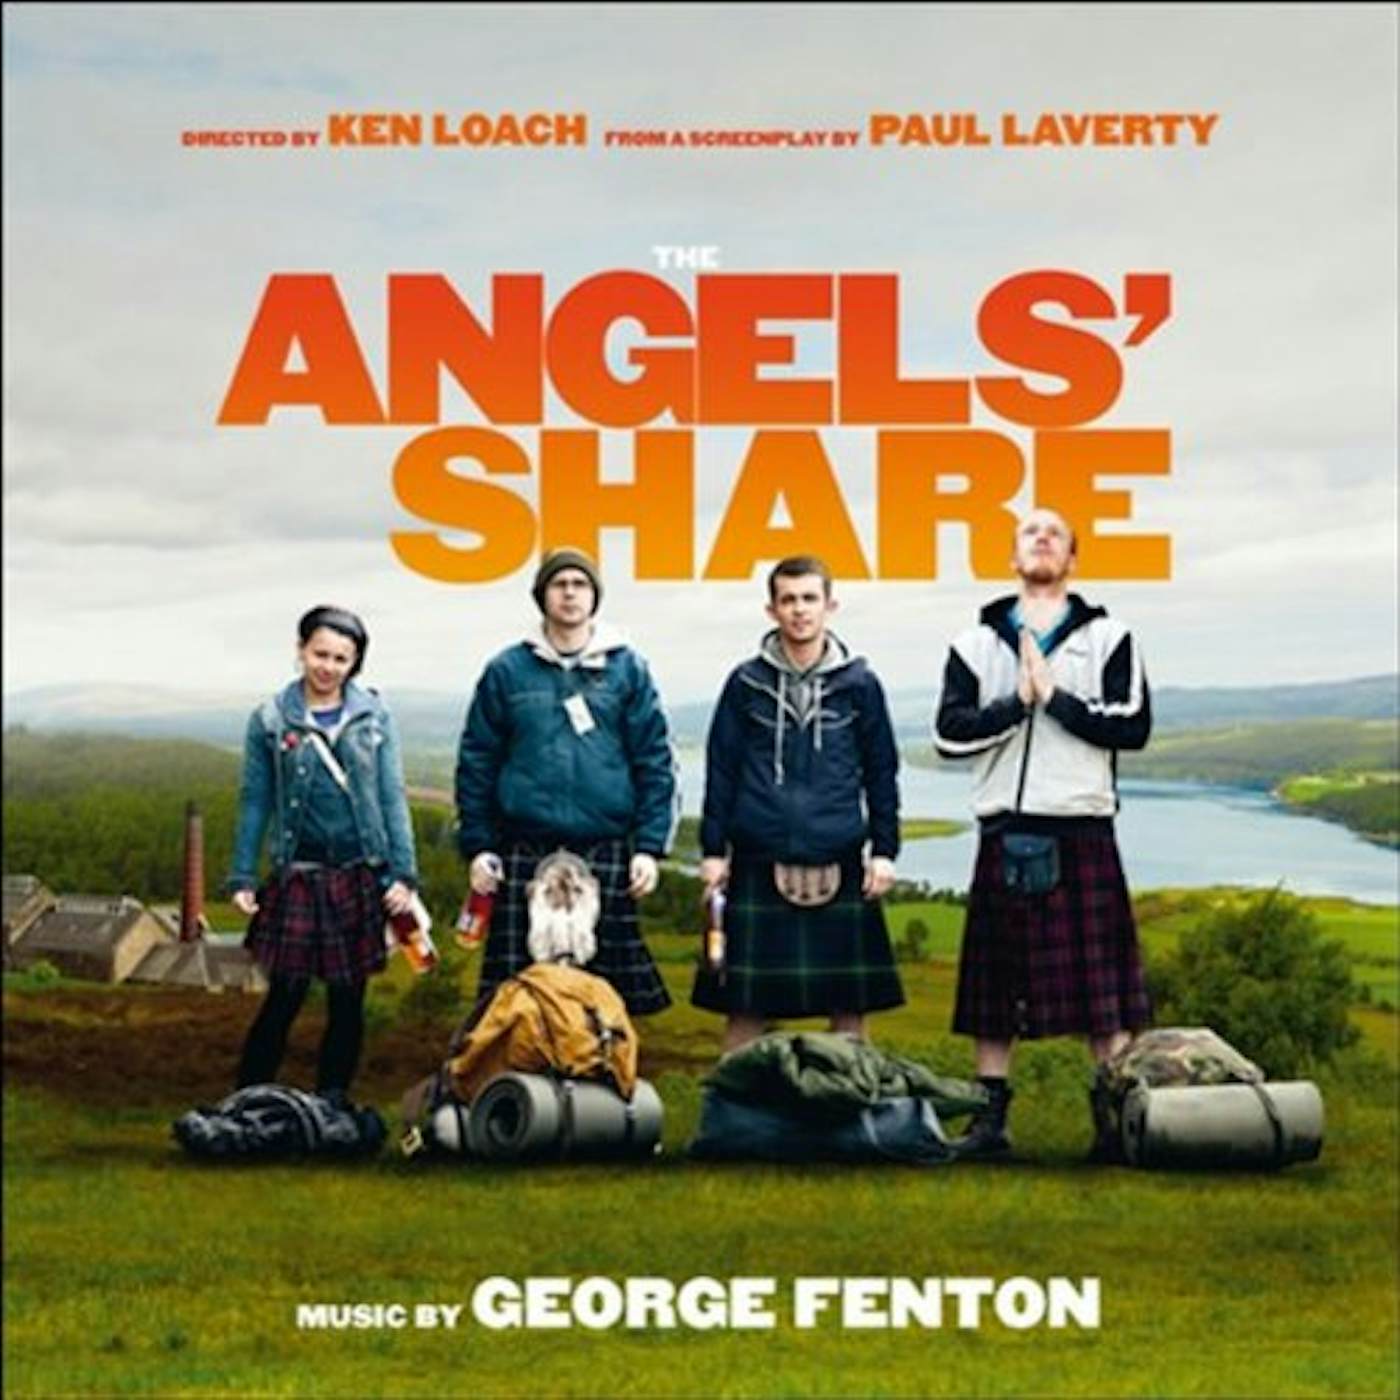 George Fenton LA PART DES ANGES / Original Soundtrack CD